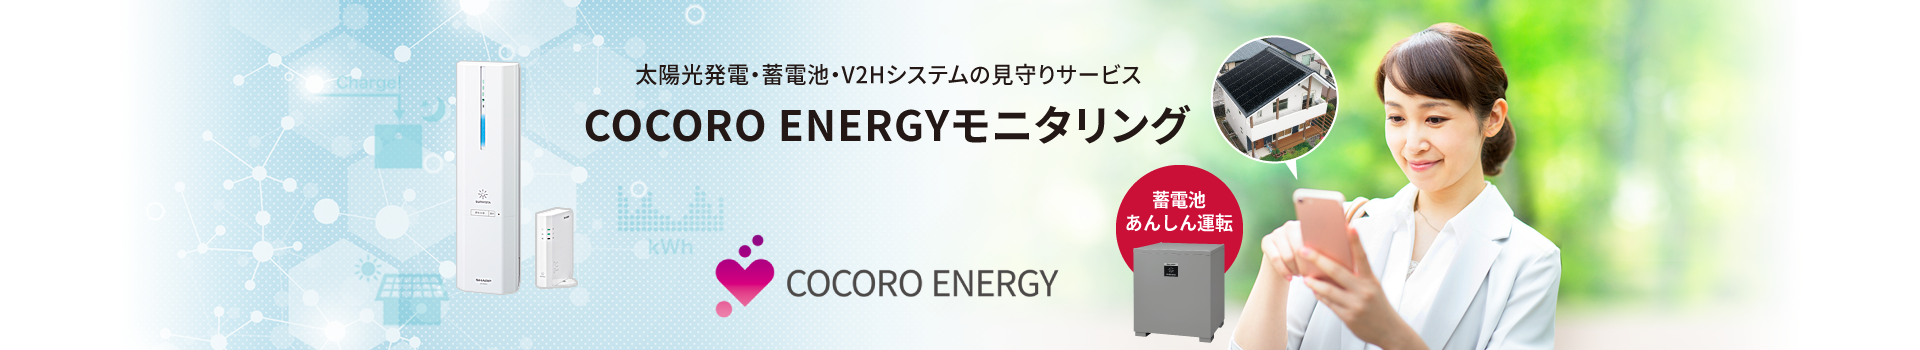 NEW 太陽光発電・蓄電池システムの見守りサービス COCORO ENERGYモニタリング COCORO ENERGY